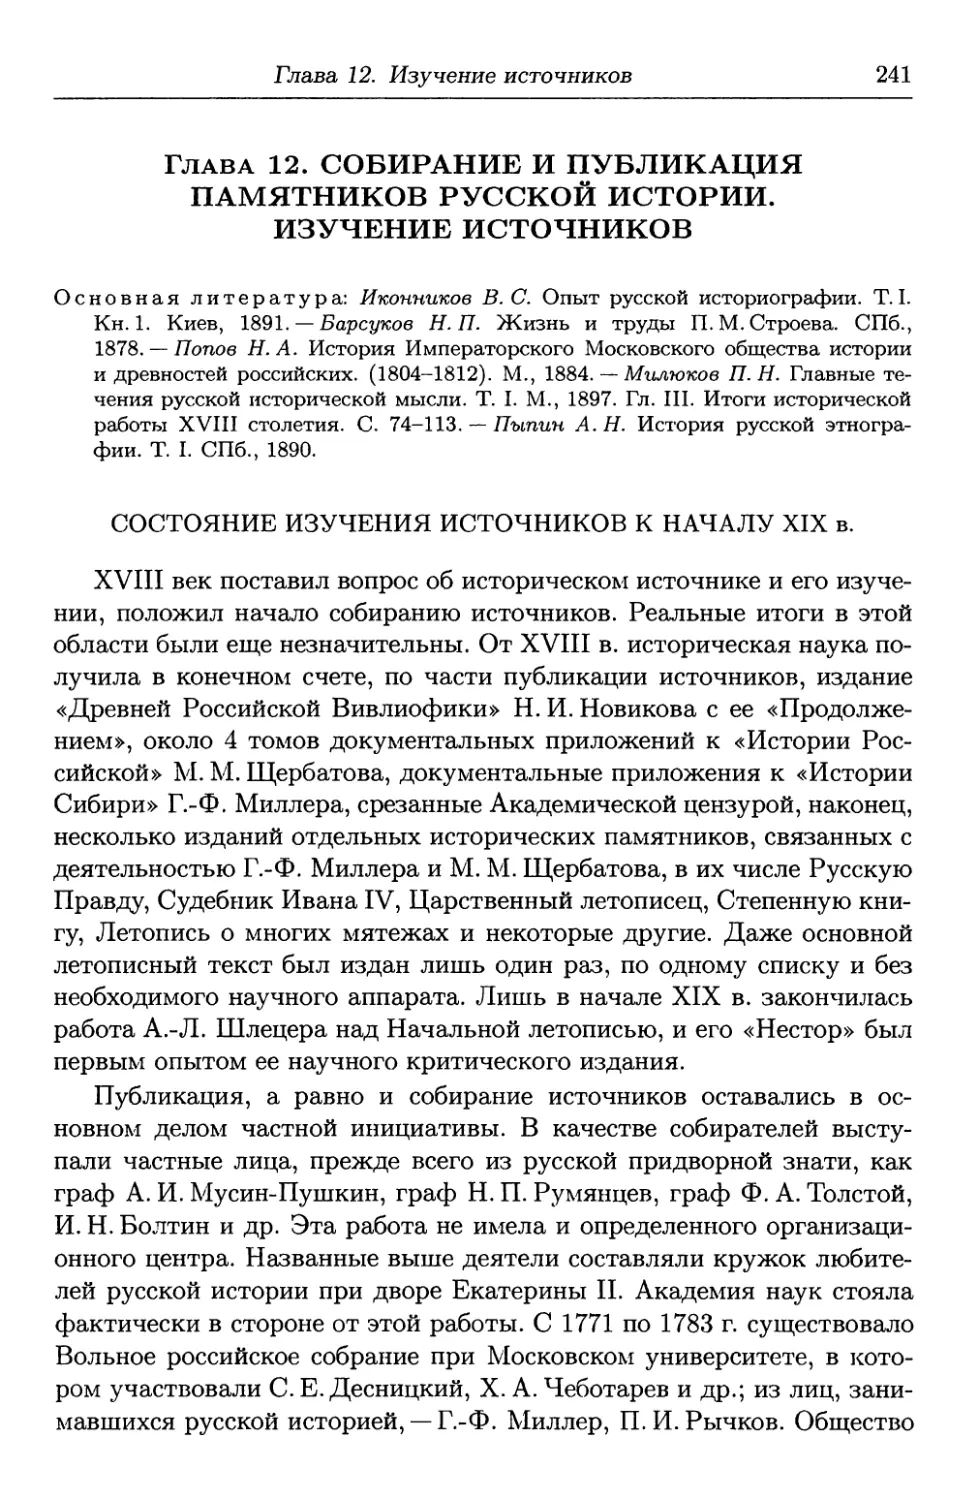 Глава 12. Собирание и публикация памятников русской истории. Изучение источников